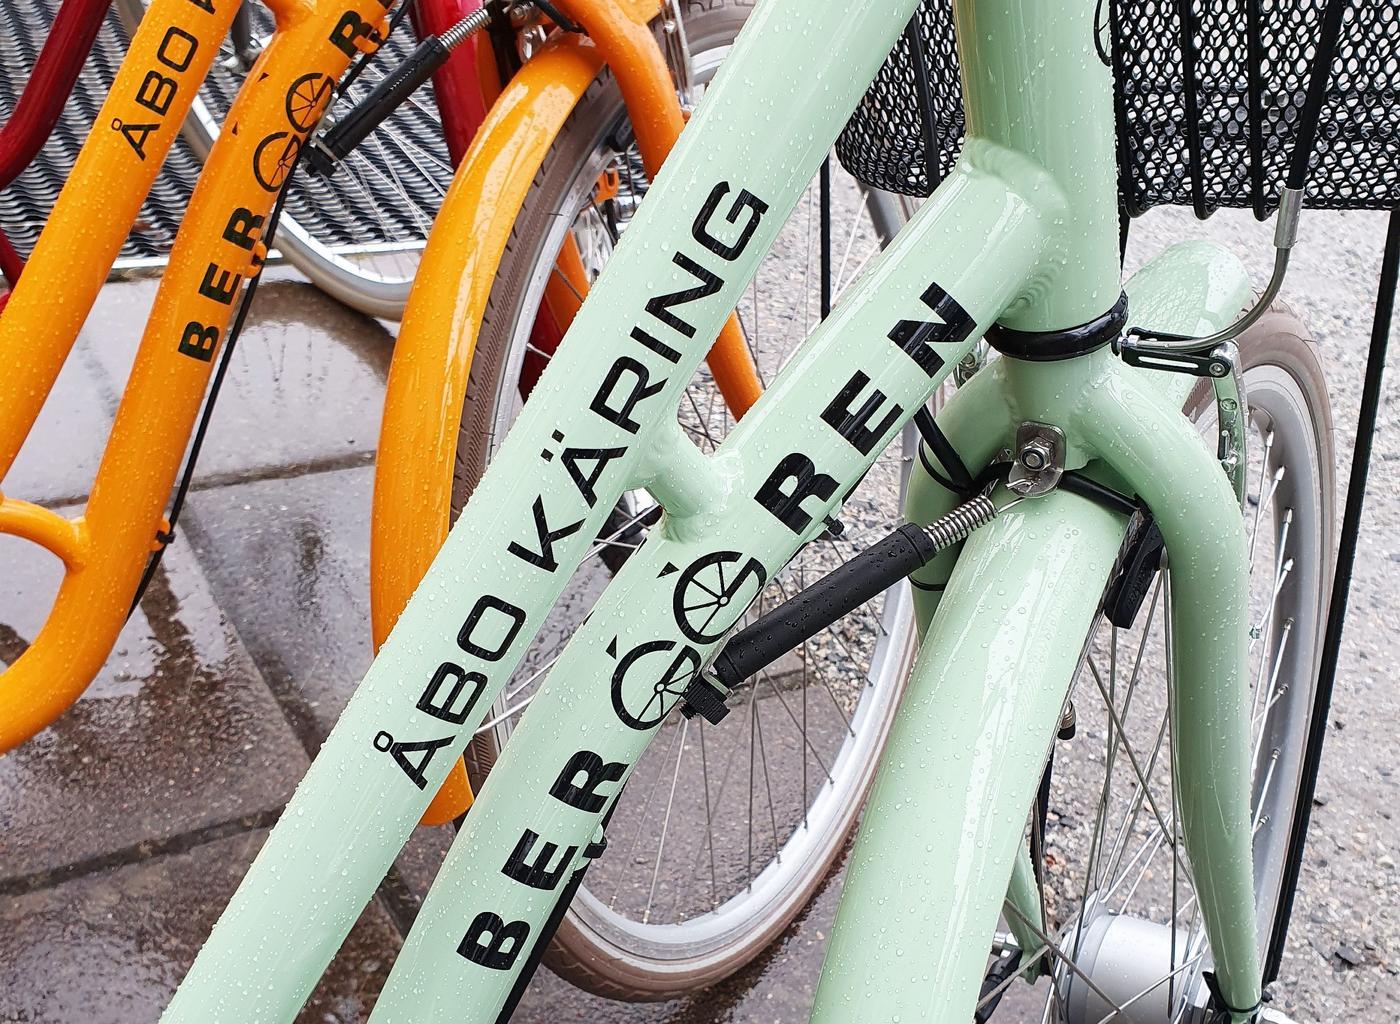 Detaljbild från en mintgrön cykel.